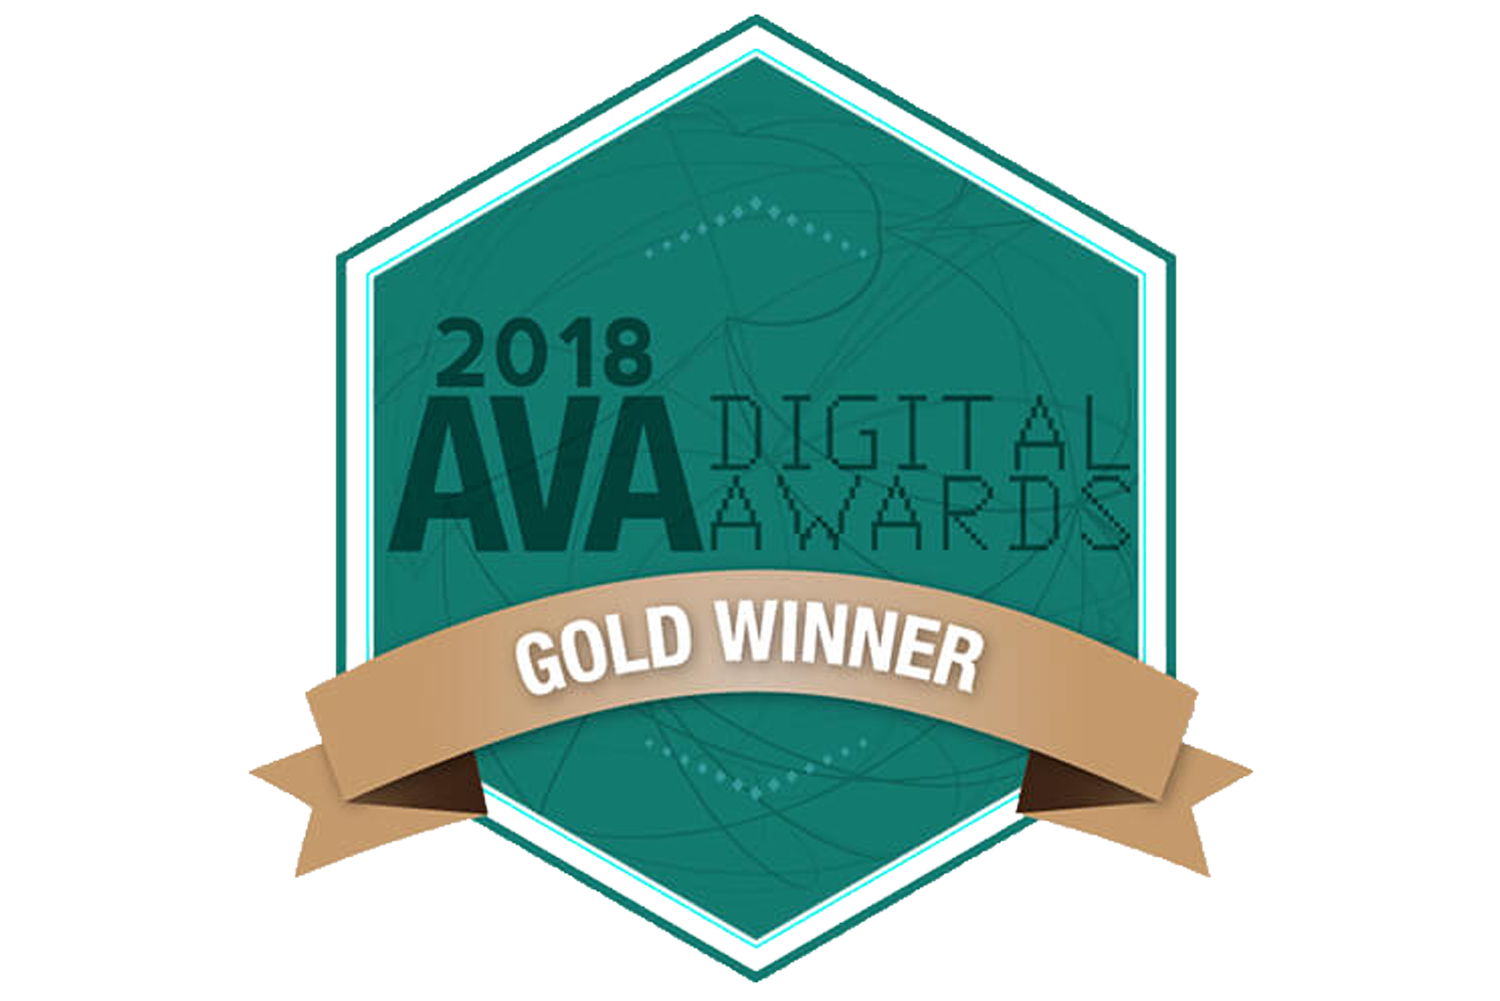 Ava Digital Awards 2018 Gold